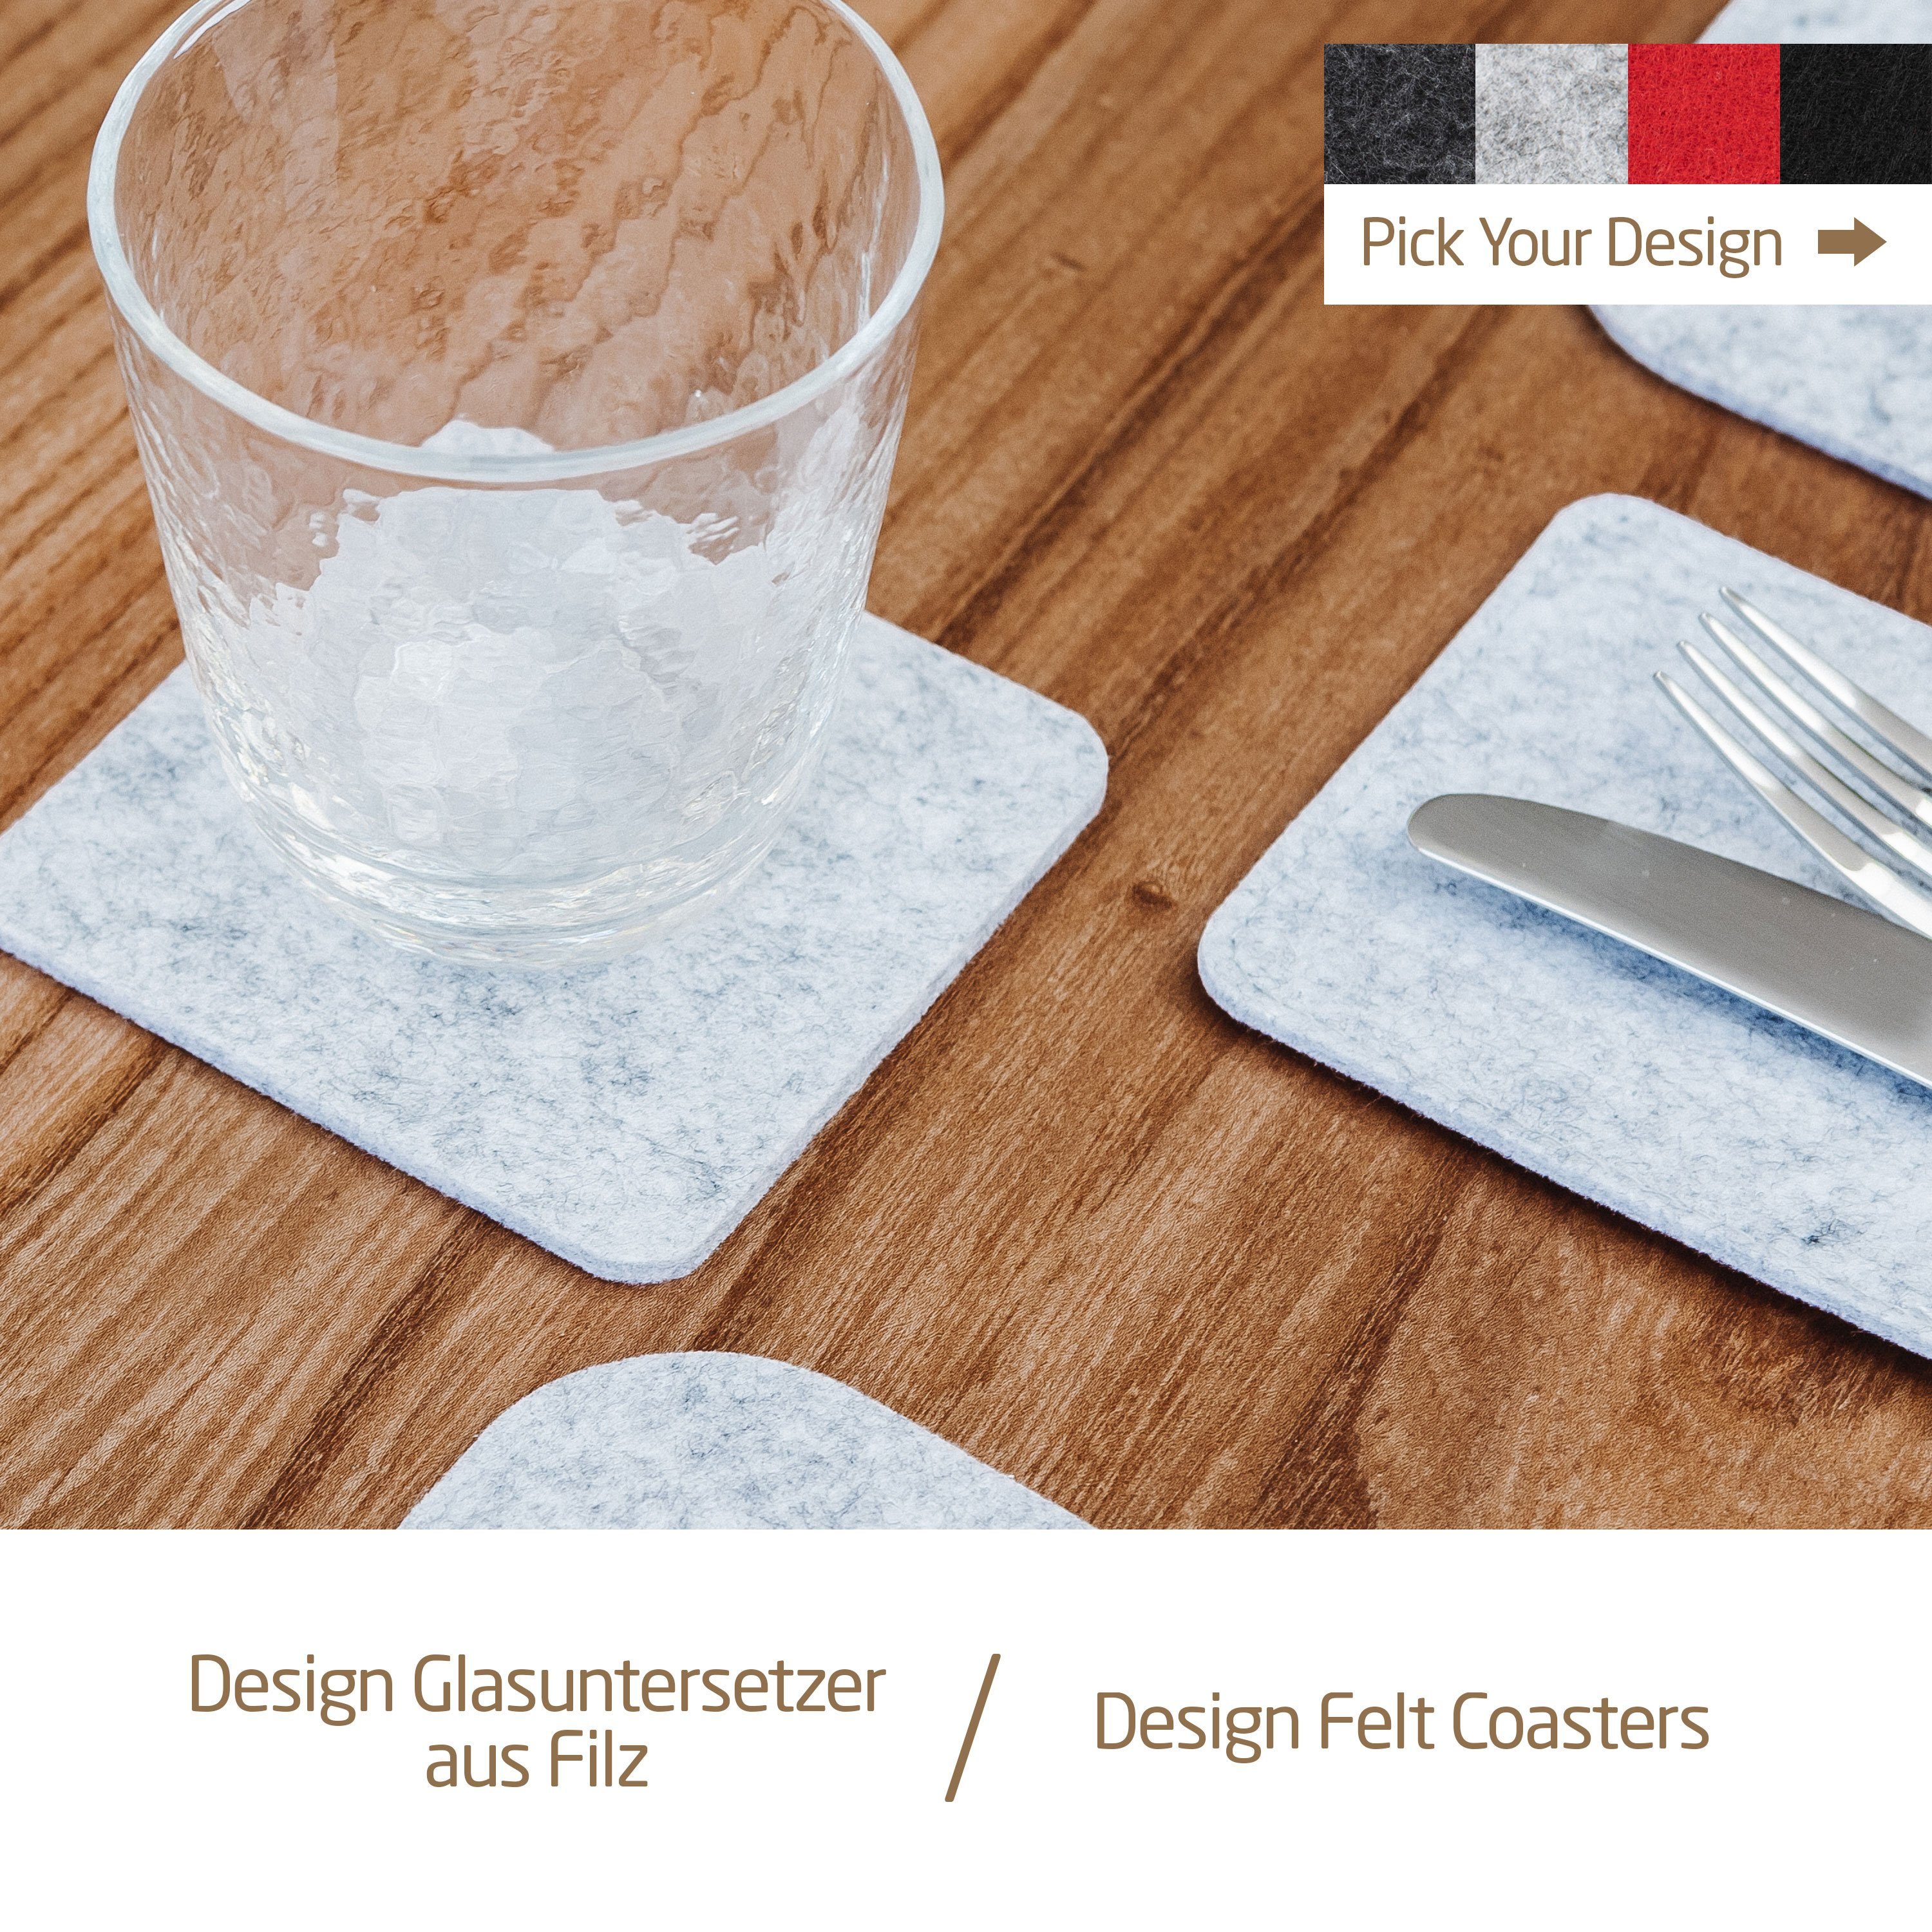 Miqio Glasuntersetzer 10 Tischdekoration 10cm, Filzuntersetzer Tischsets, Glasuntersetzer Set mit Dunkelgrau 10-tlg., (Dekokissen), und Einrichtungsartikel Leder-Label Glasuntersetzer, Ökotex zertifiziert. (Platzsetz, für Sitzkissen) er MIQIO Schadstoffgeprüft. Tischläufer, 10 Zubehör